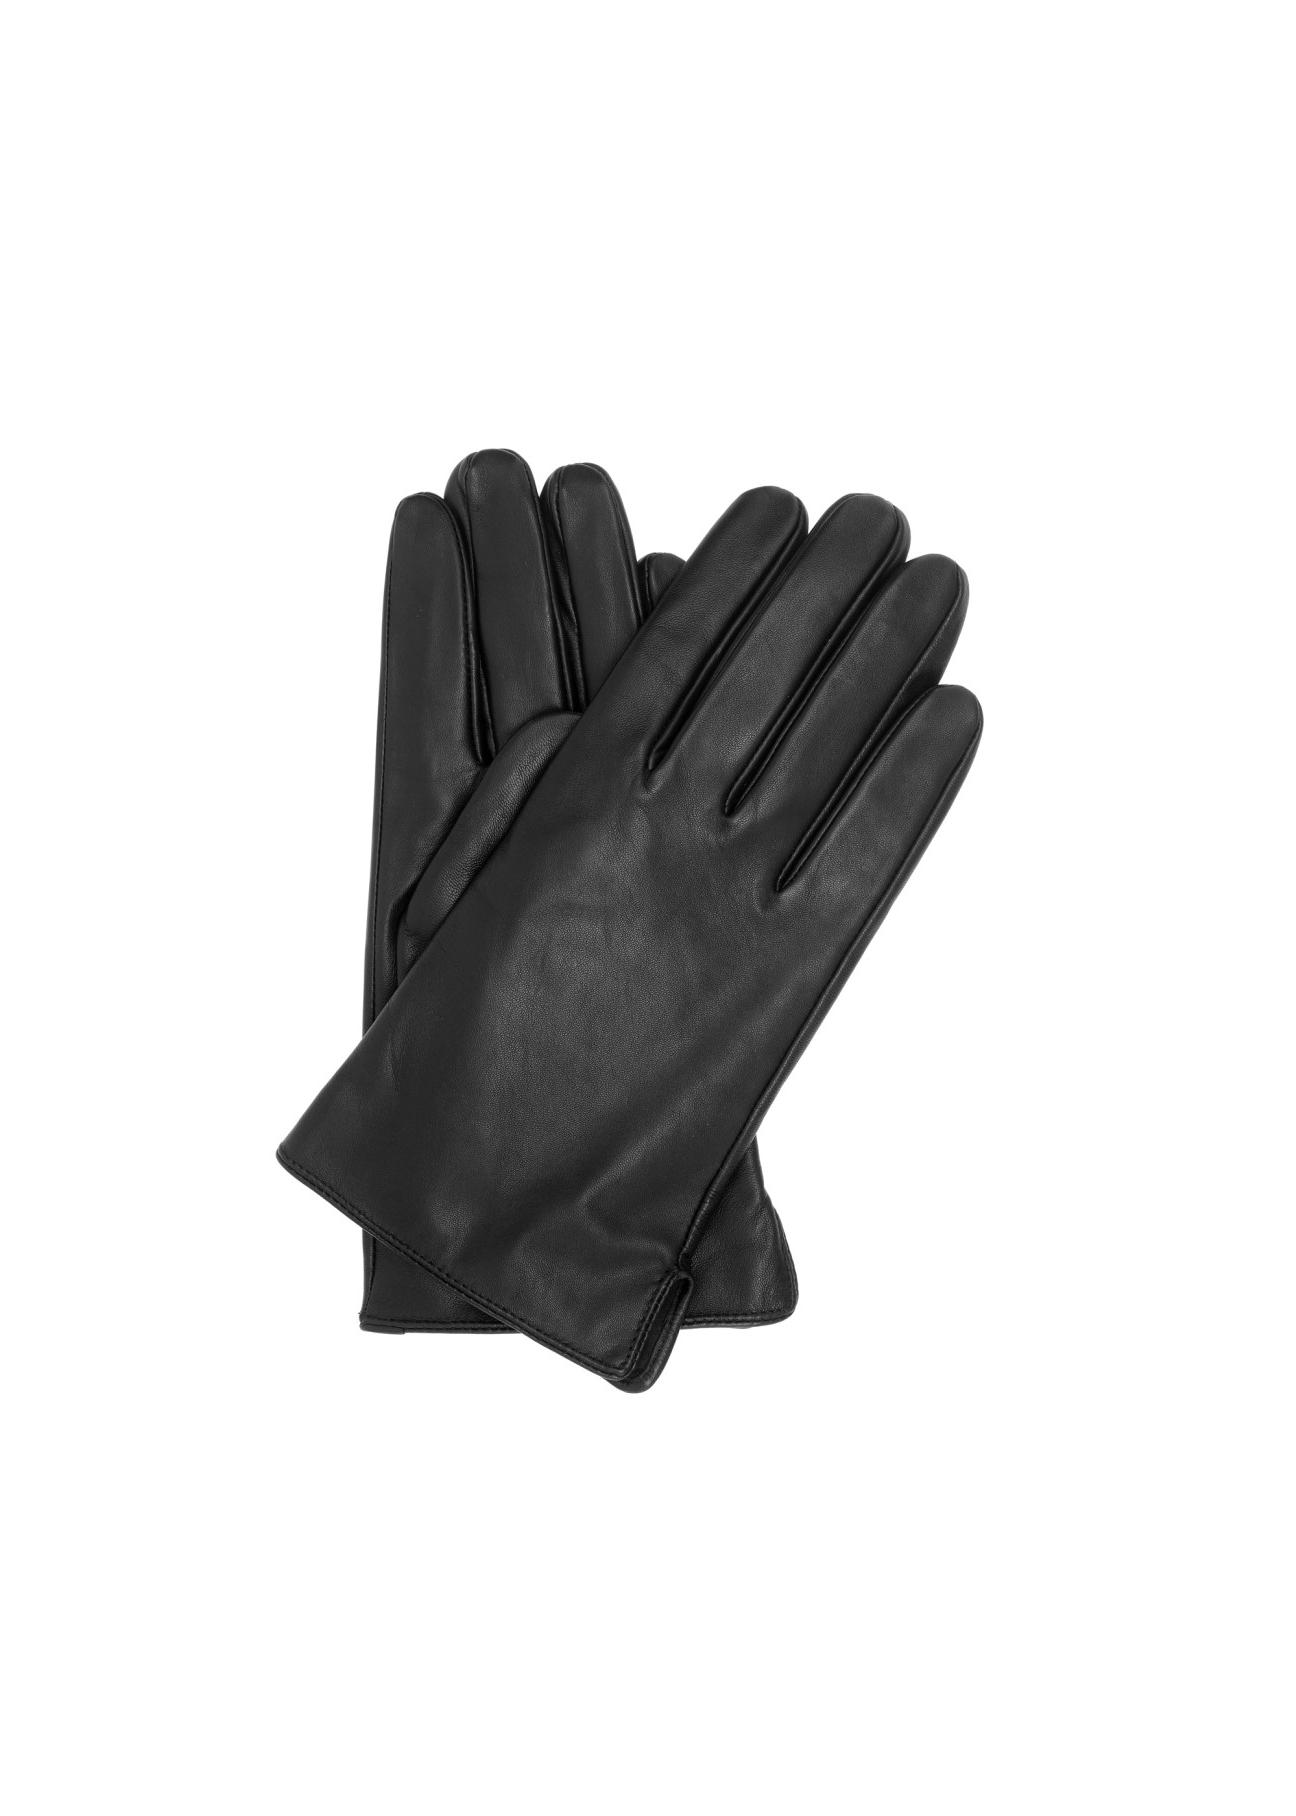 Czarne skórzane rękawiczki męskie REKMS-0009-99(Z23)